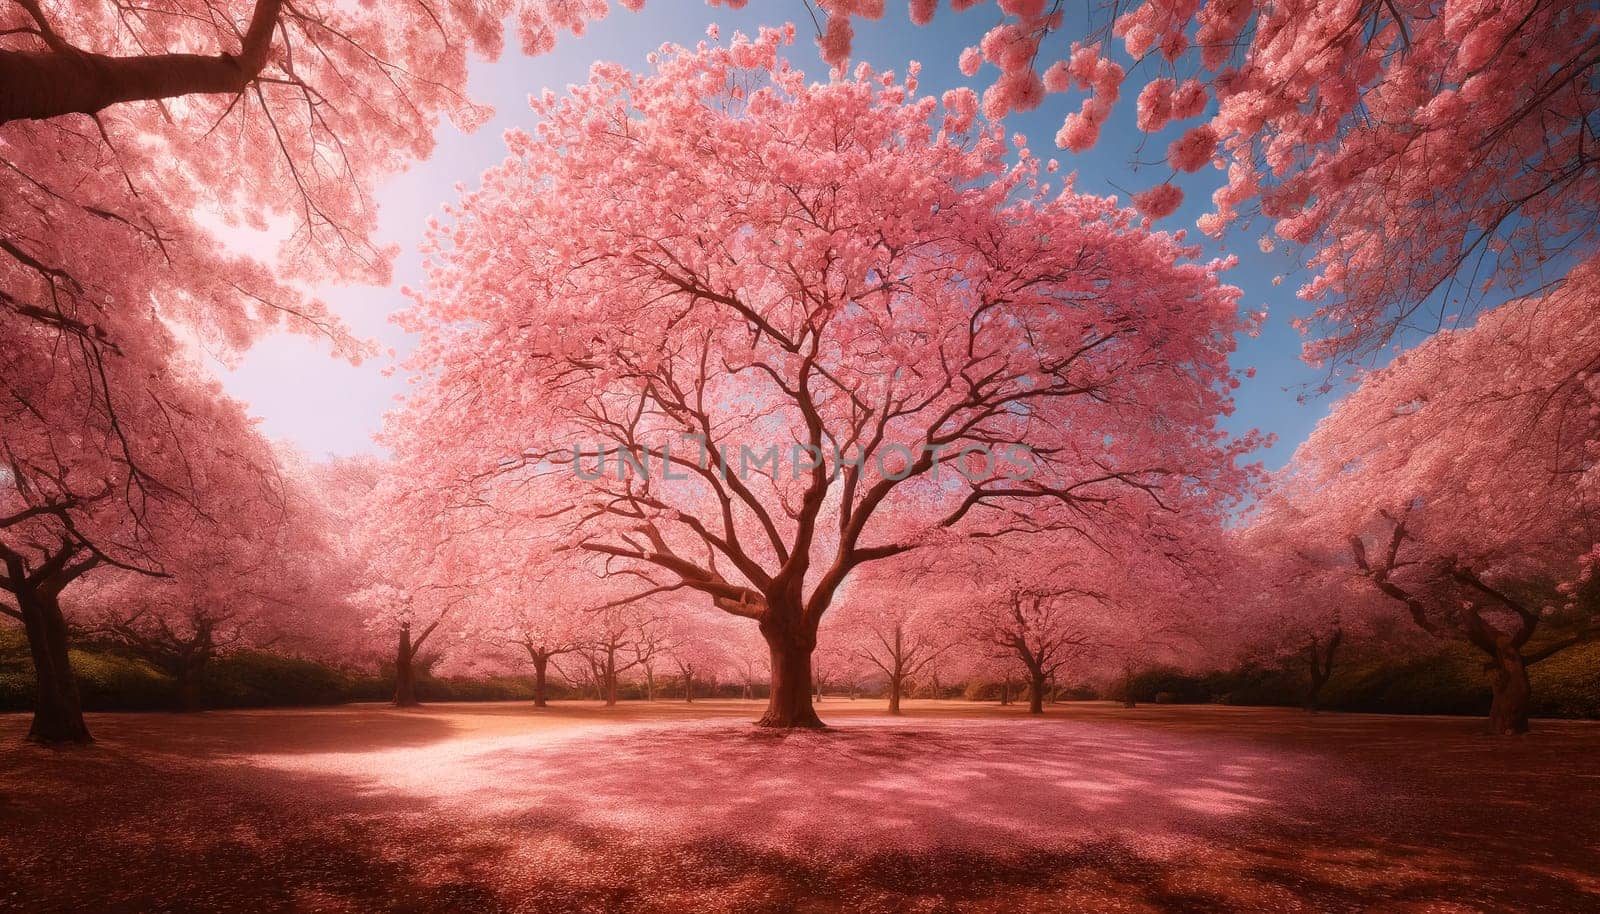 blooming pink sakura trees in sunlight by Annado